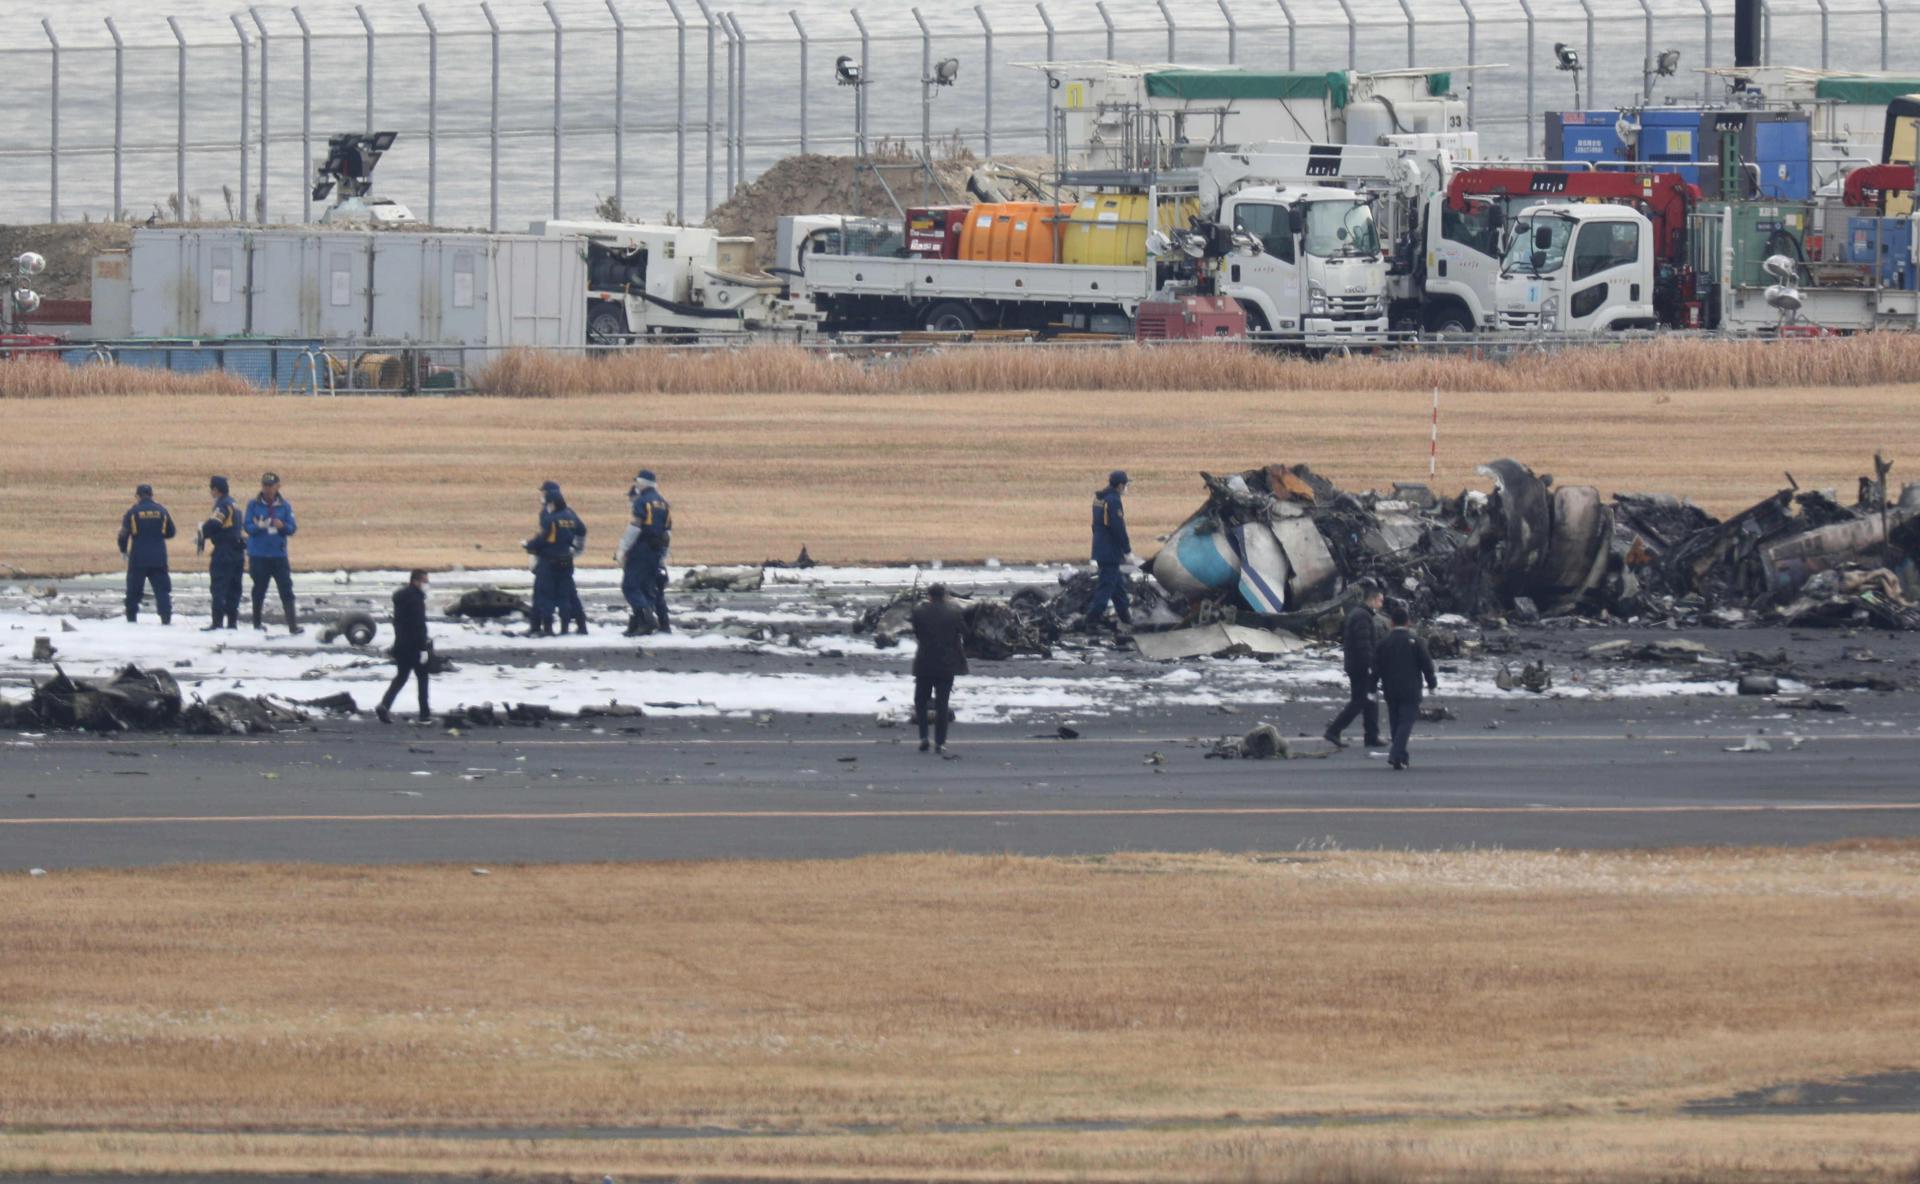 Doce miembros de la tripulación fueron los responsables de la milagrosa evacuación de 367 pasajeros en cuestión de minutos tras el choque de dos aviones en Tokio, Japón. Foto: fuente externa.